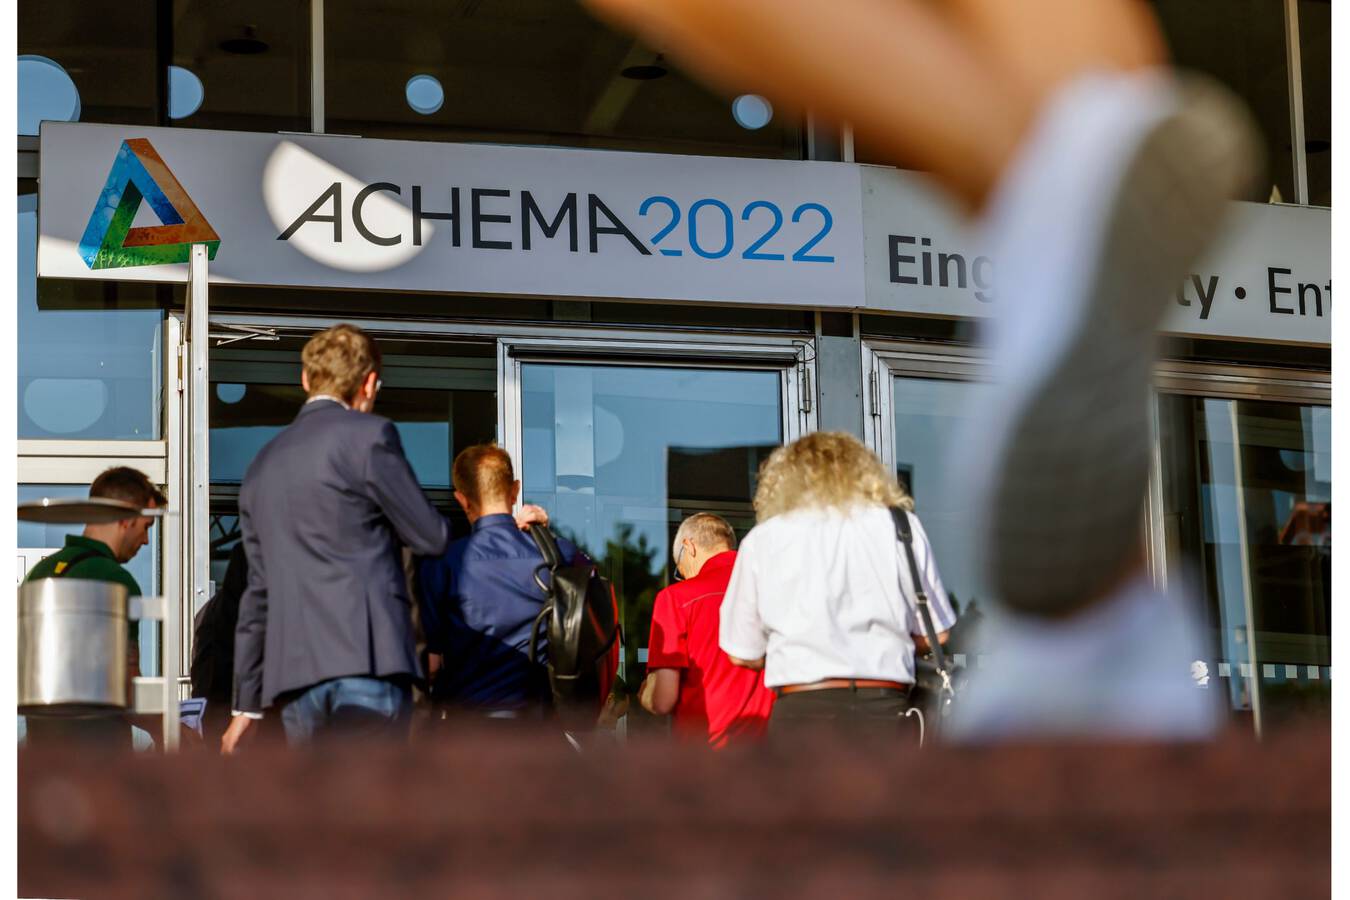 ACHEMA 2022 bietet der Prozessindustrie neue Impulse Bei der ACHEMA 2022 zeigten über 2.200 Aussteller aus mehr als 50 Ländern vom 22. bis 26. August auf dem Frankfurter Messegelände die neueste Ausrüstung und innovative Verfahren für die Chemie-, Pharma- und Lebensmittelindustrie.